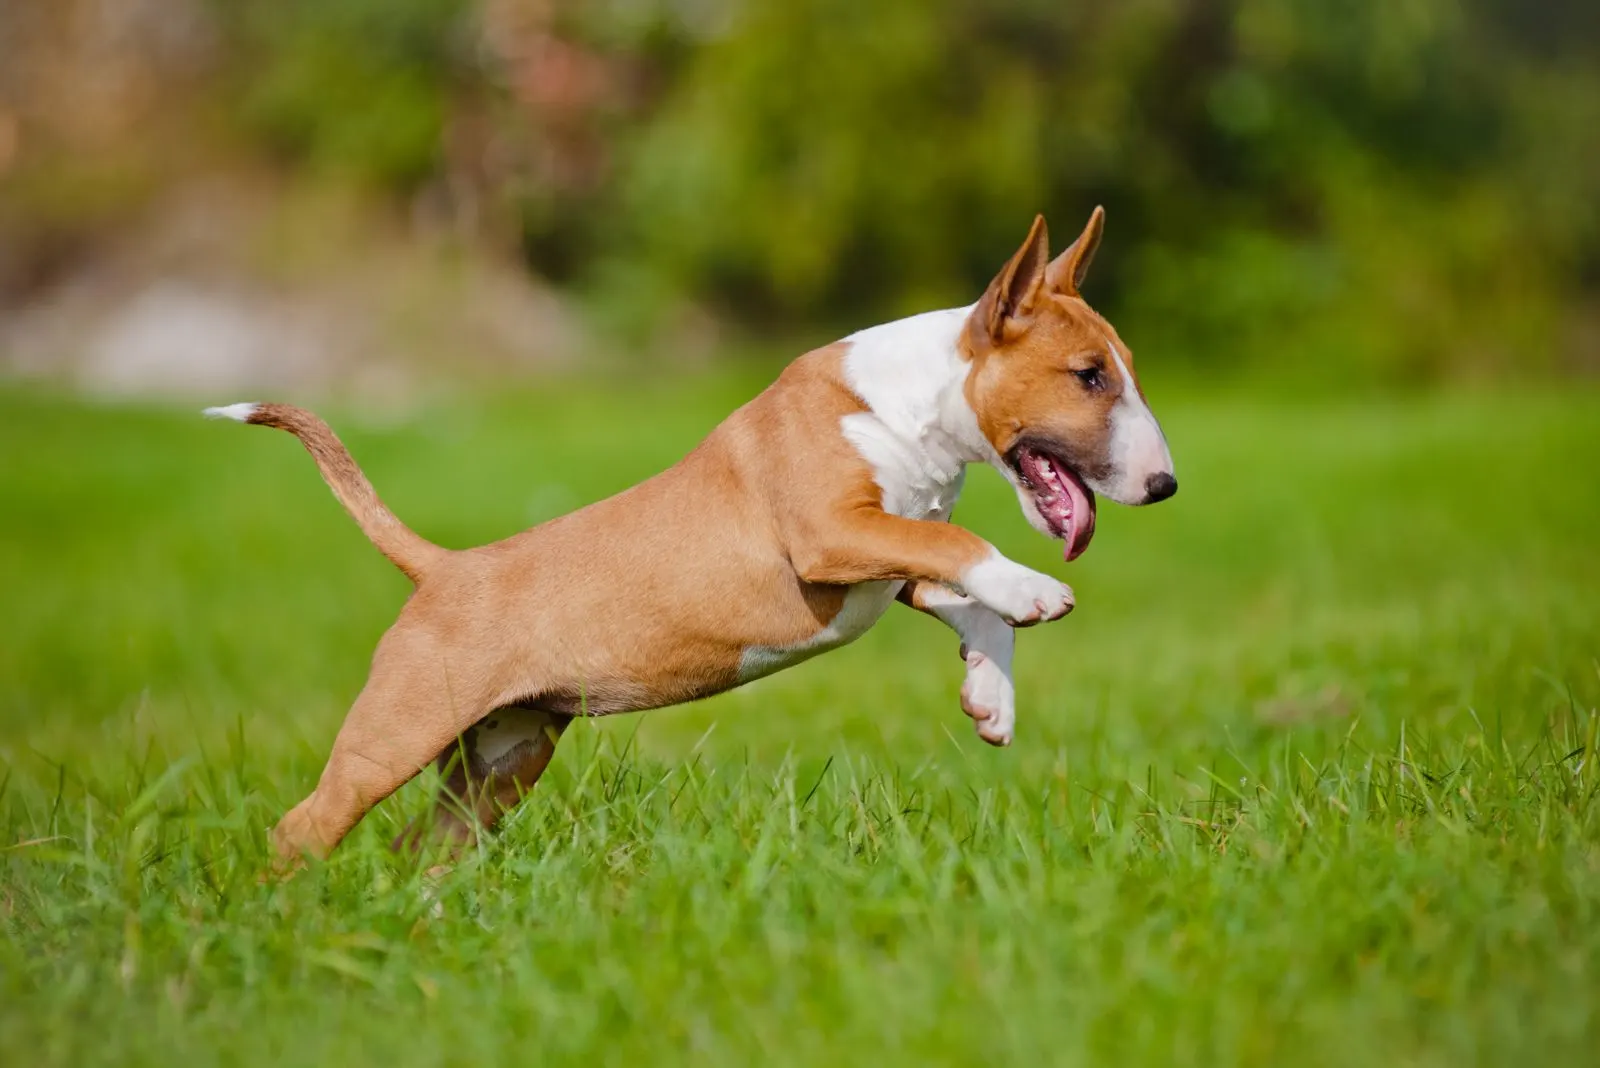 bull terrier runs across the field